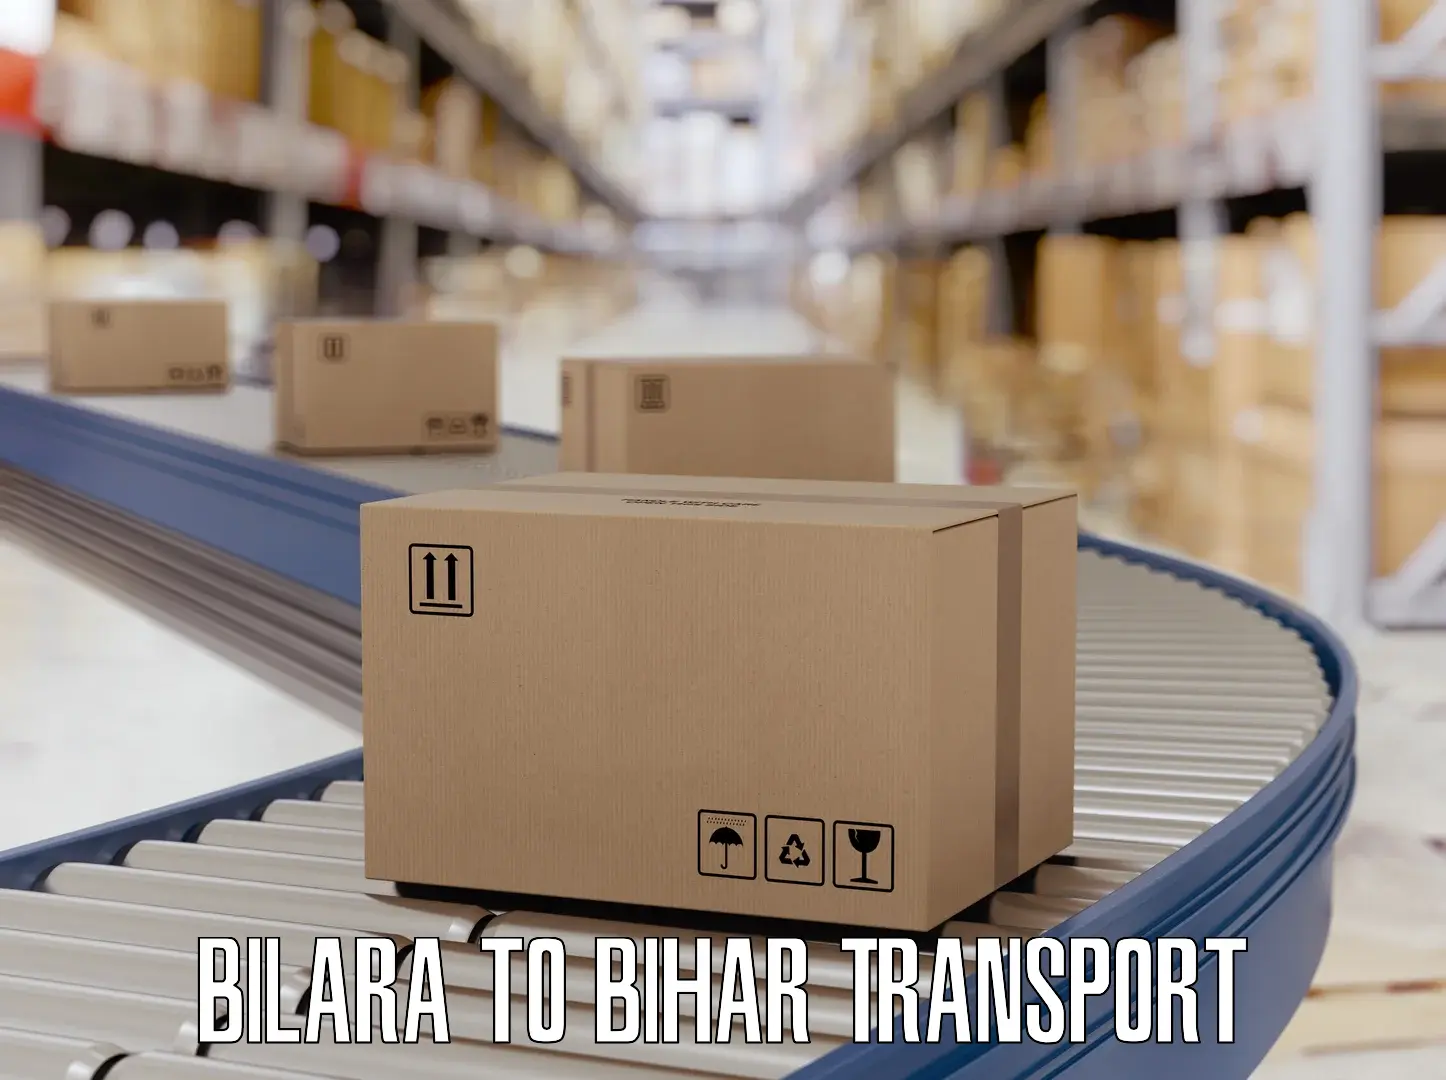 Delivery service Bilara to Bihar